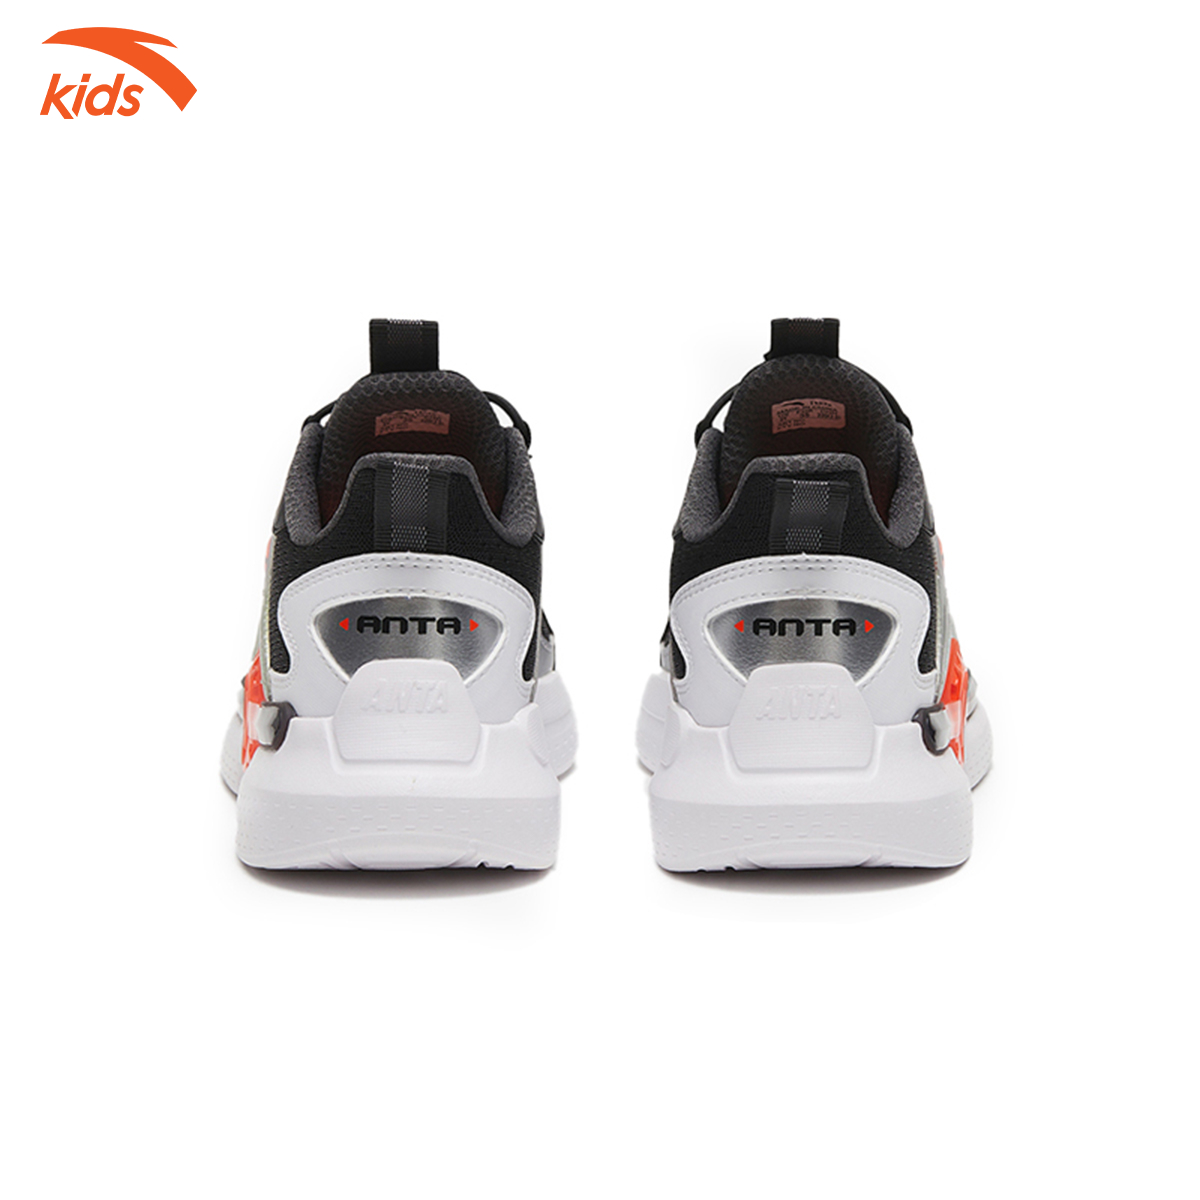 Giày thời trang thể thao bé trai Anta Kids, giày nhẹ, chống trơn trượt 312318807-1